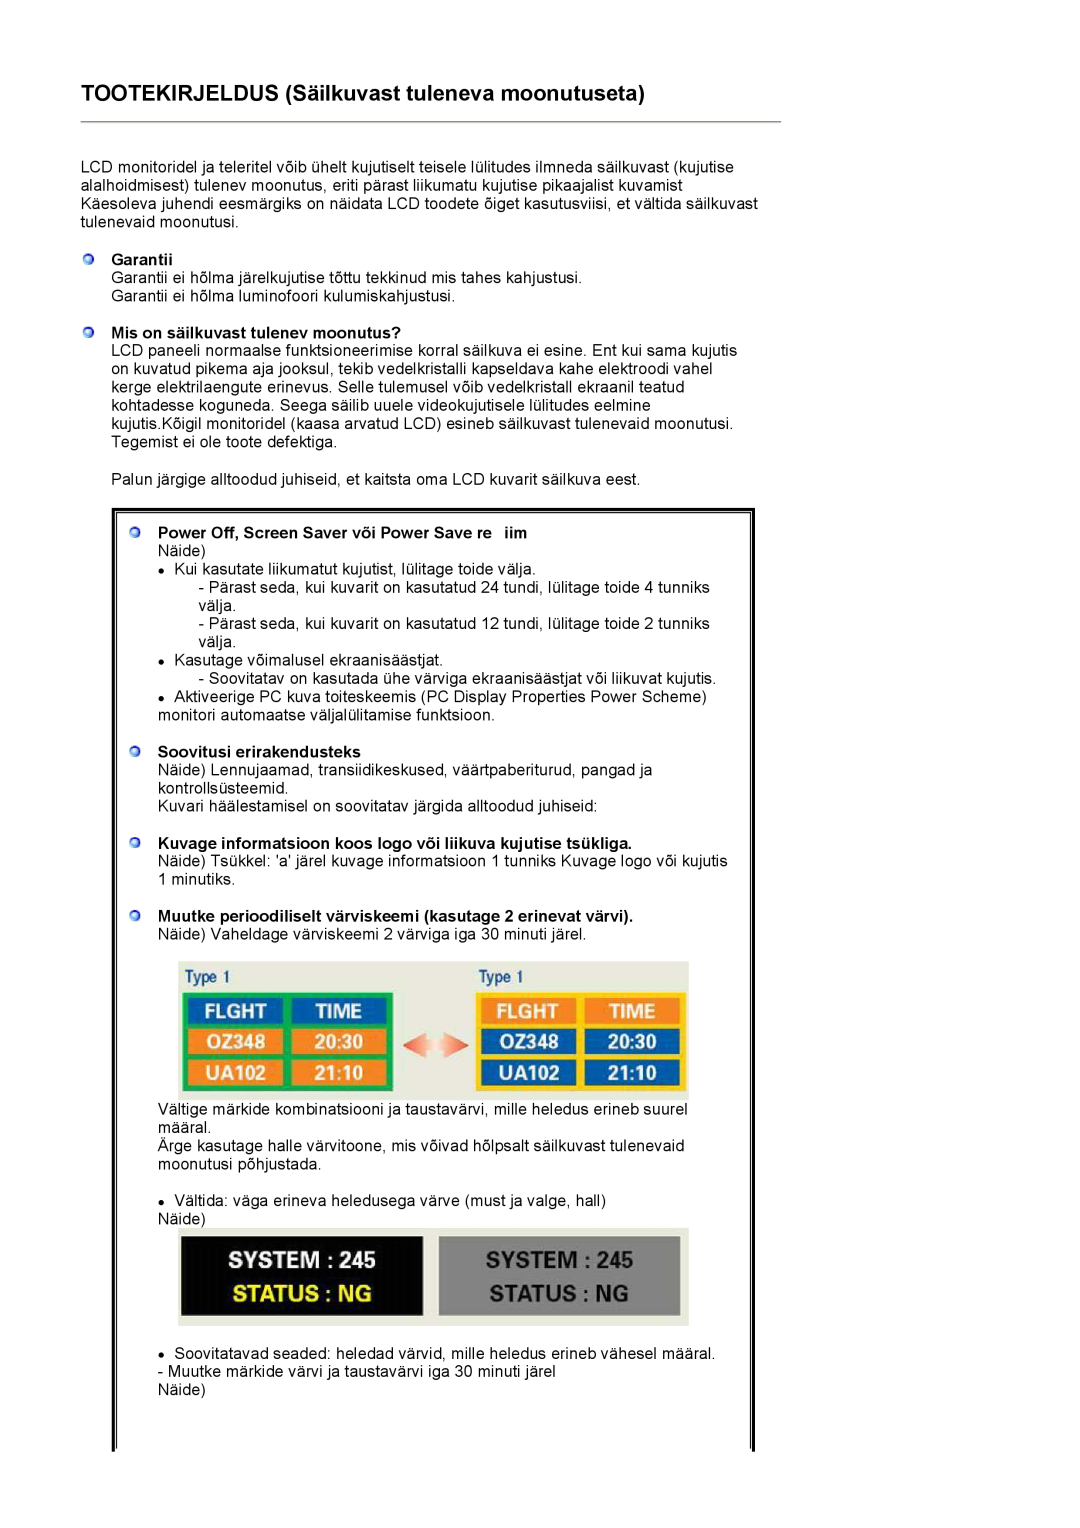 Samsung LS17MJVKS/EDC manual TOOTEKIRJELDUS Säilkuvast tuleneva moonutuseta, Garantii, Mis on säilkuvast tulenev moonutus? 